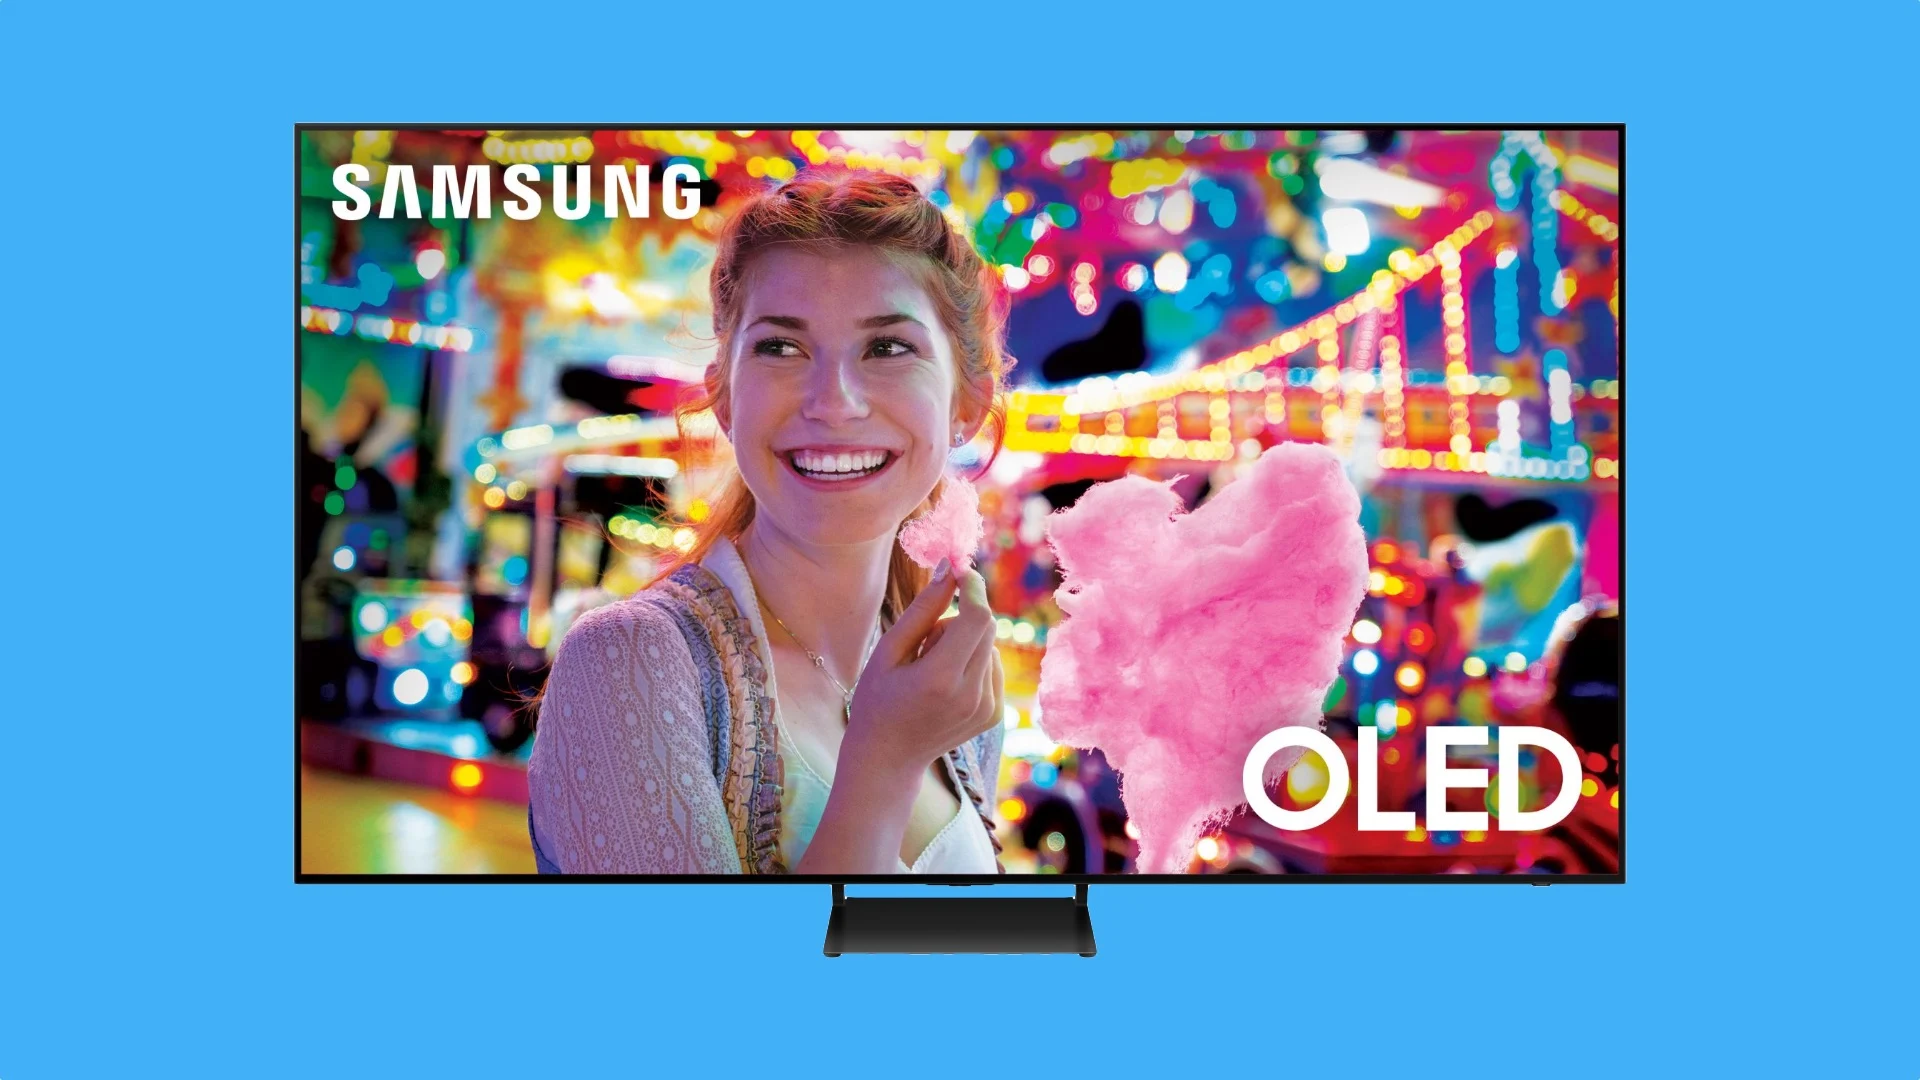 Samsung ha annunciato il suo TV OLED più grande: il modello QN83S90C con pannello LG viene presentato a 5400 dollari.